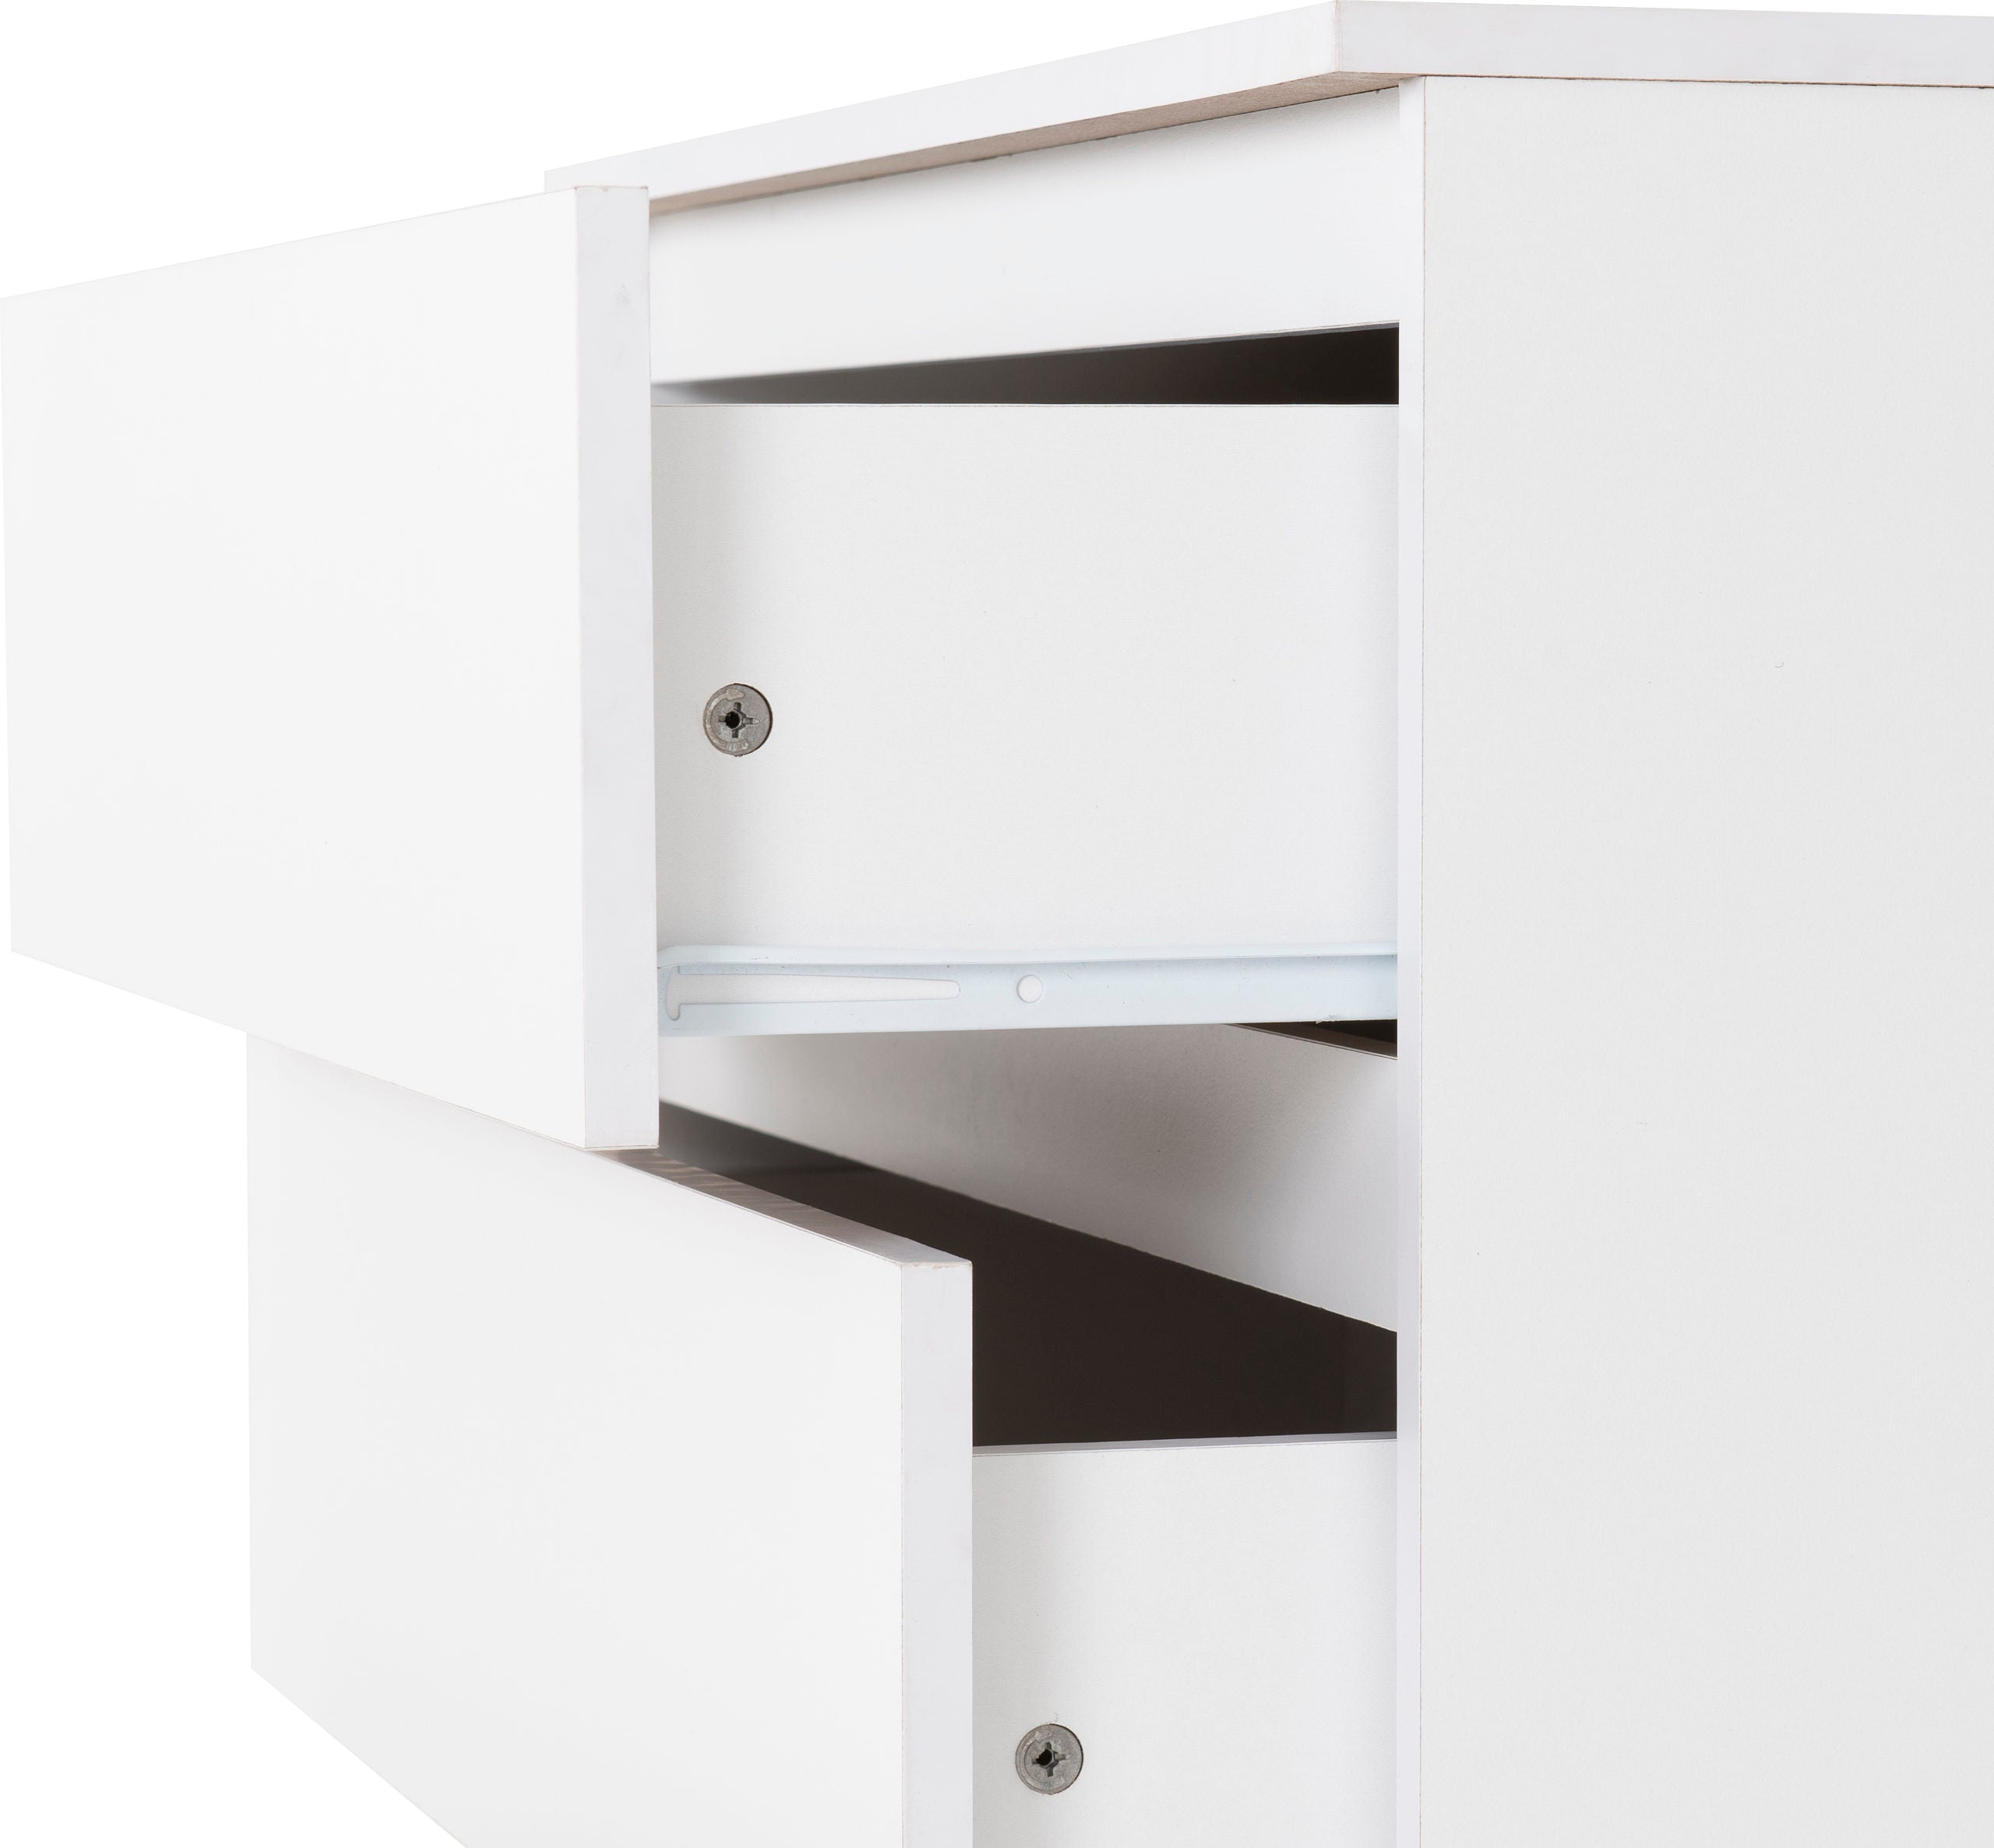 3 white drawers